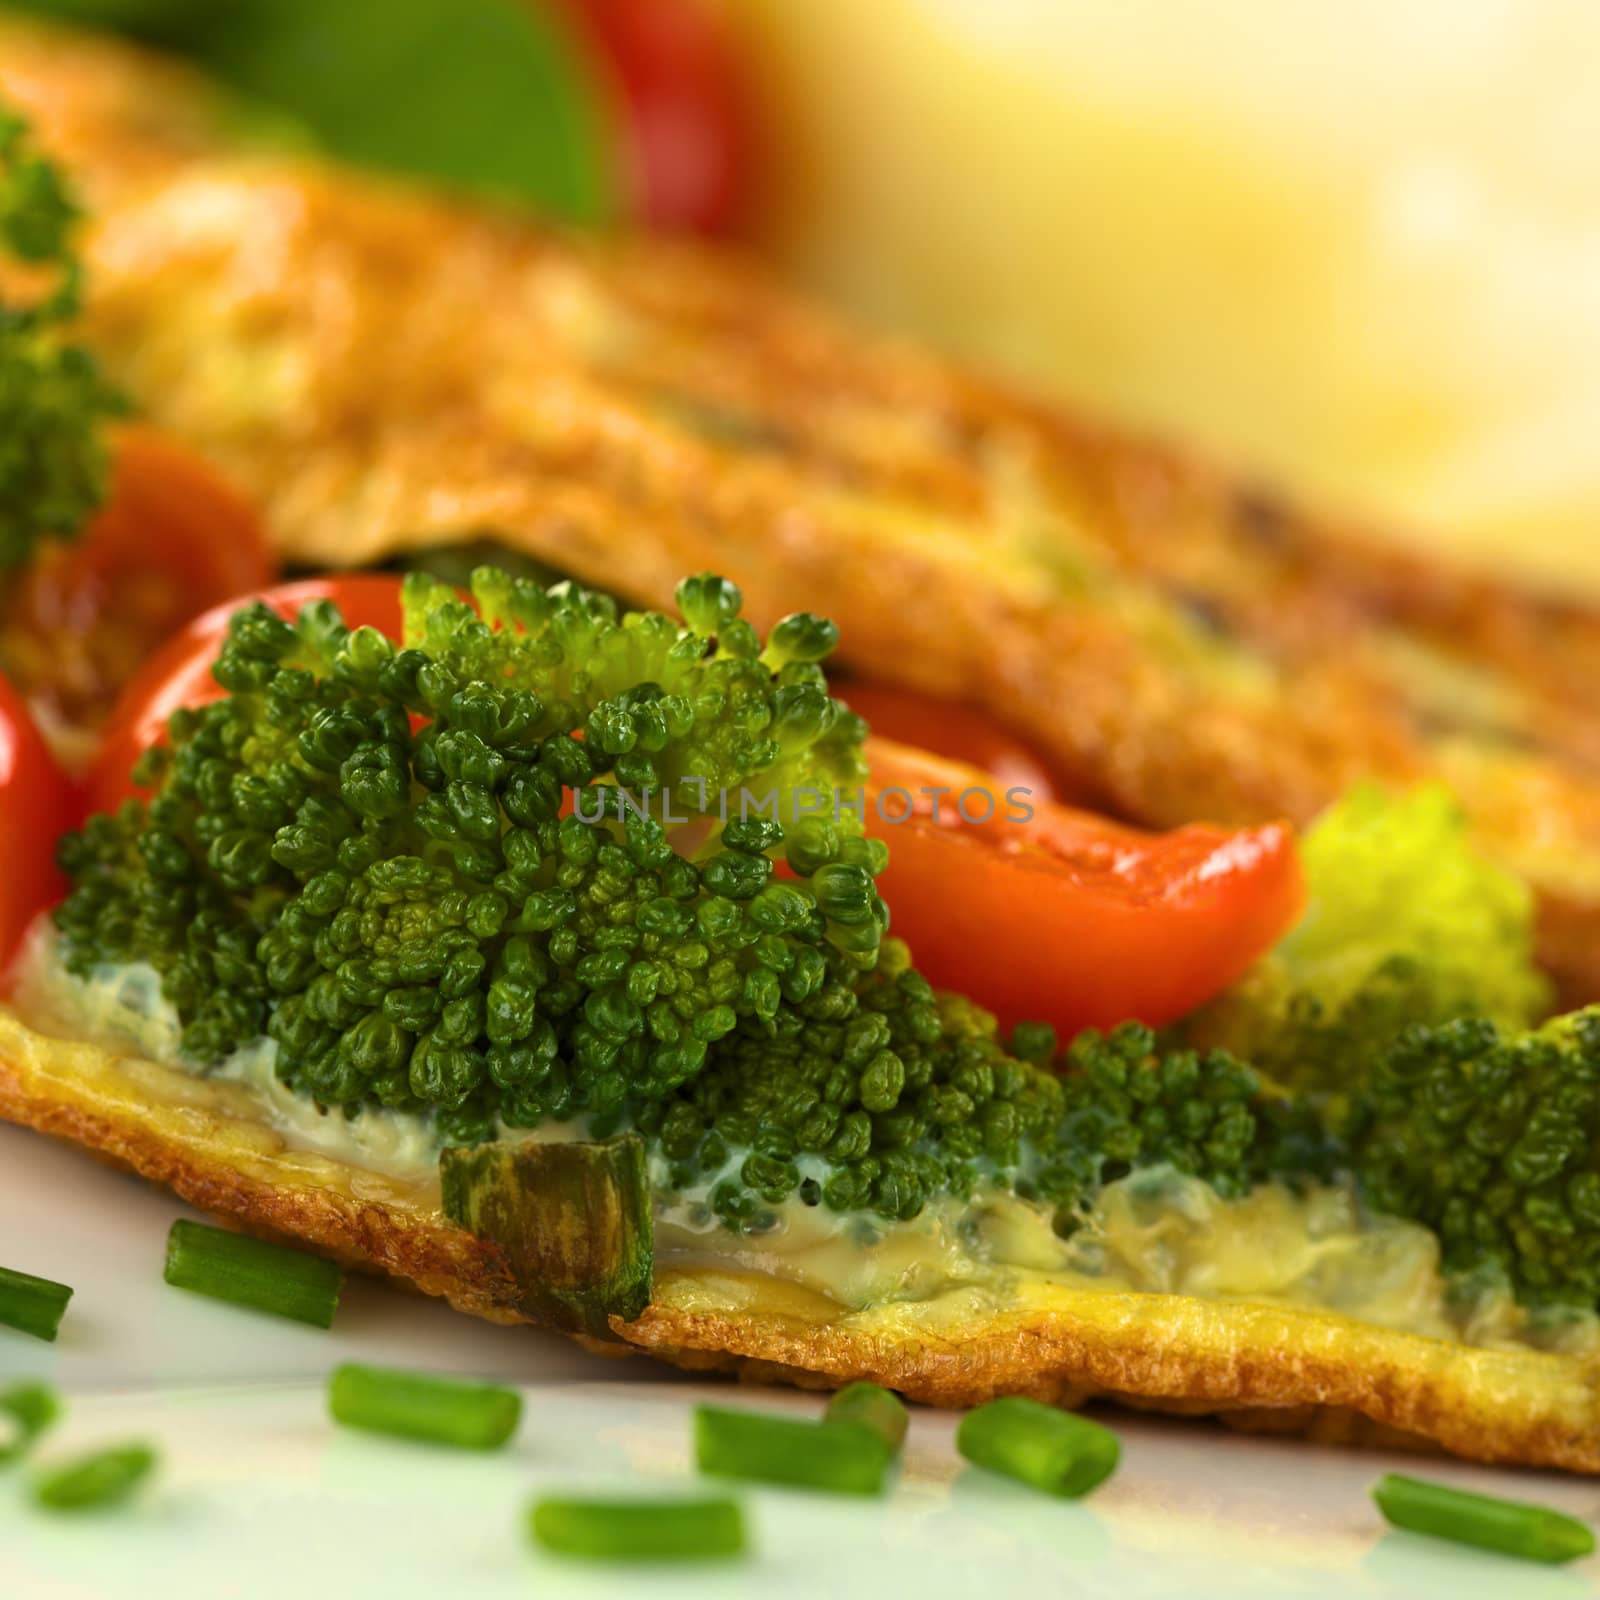 Broccoli and Tomato Omelette by ildi